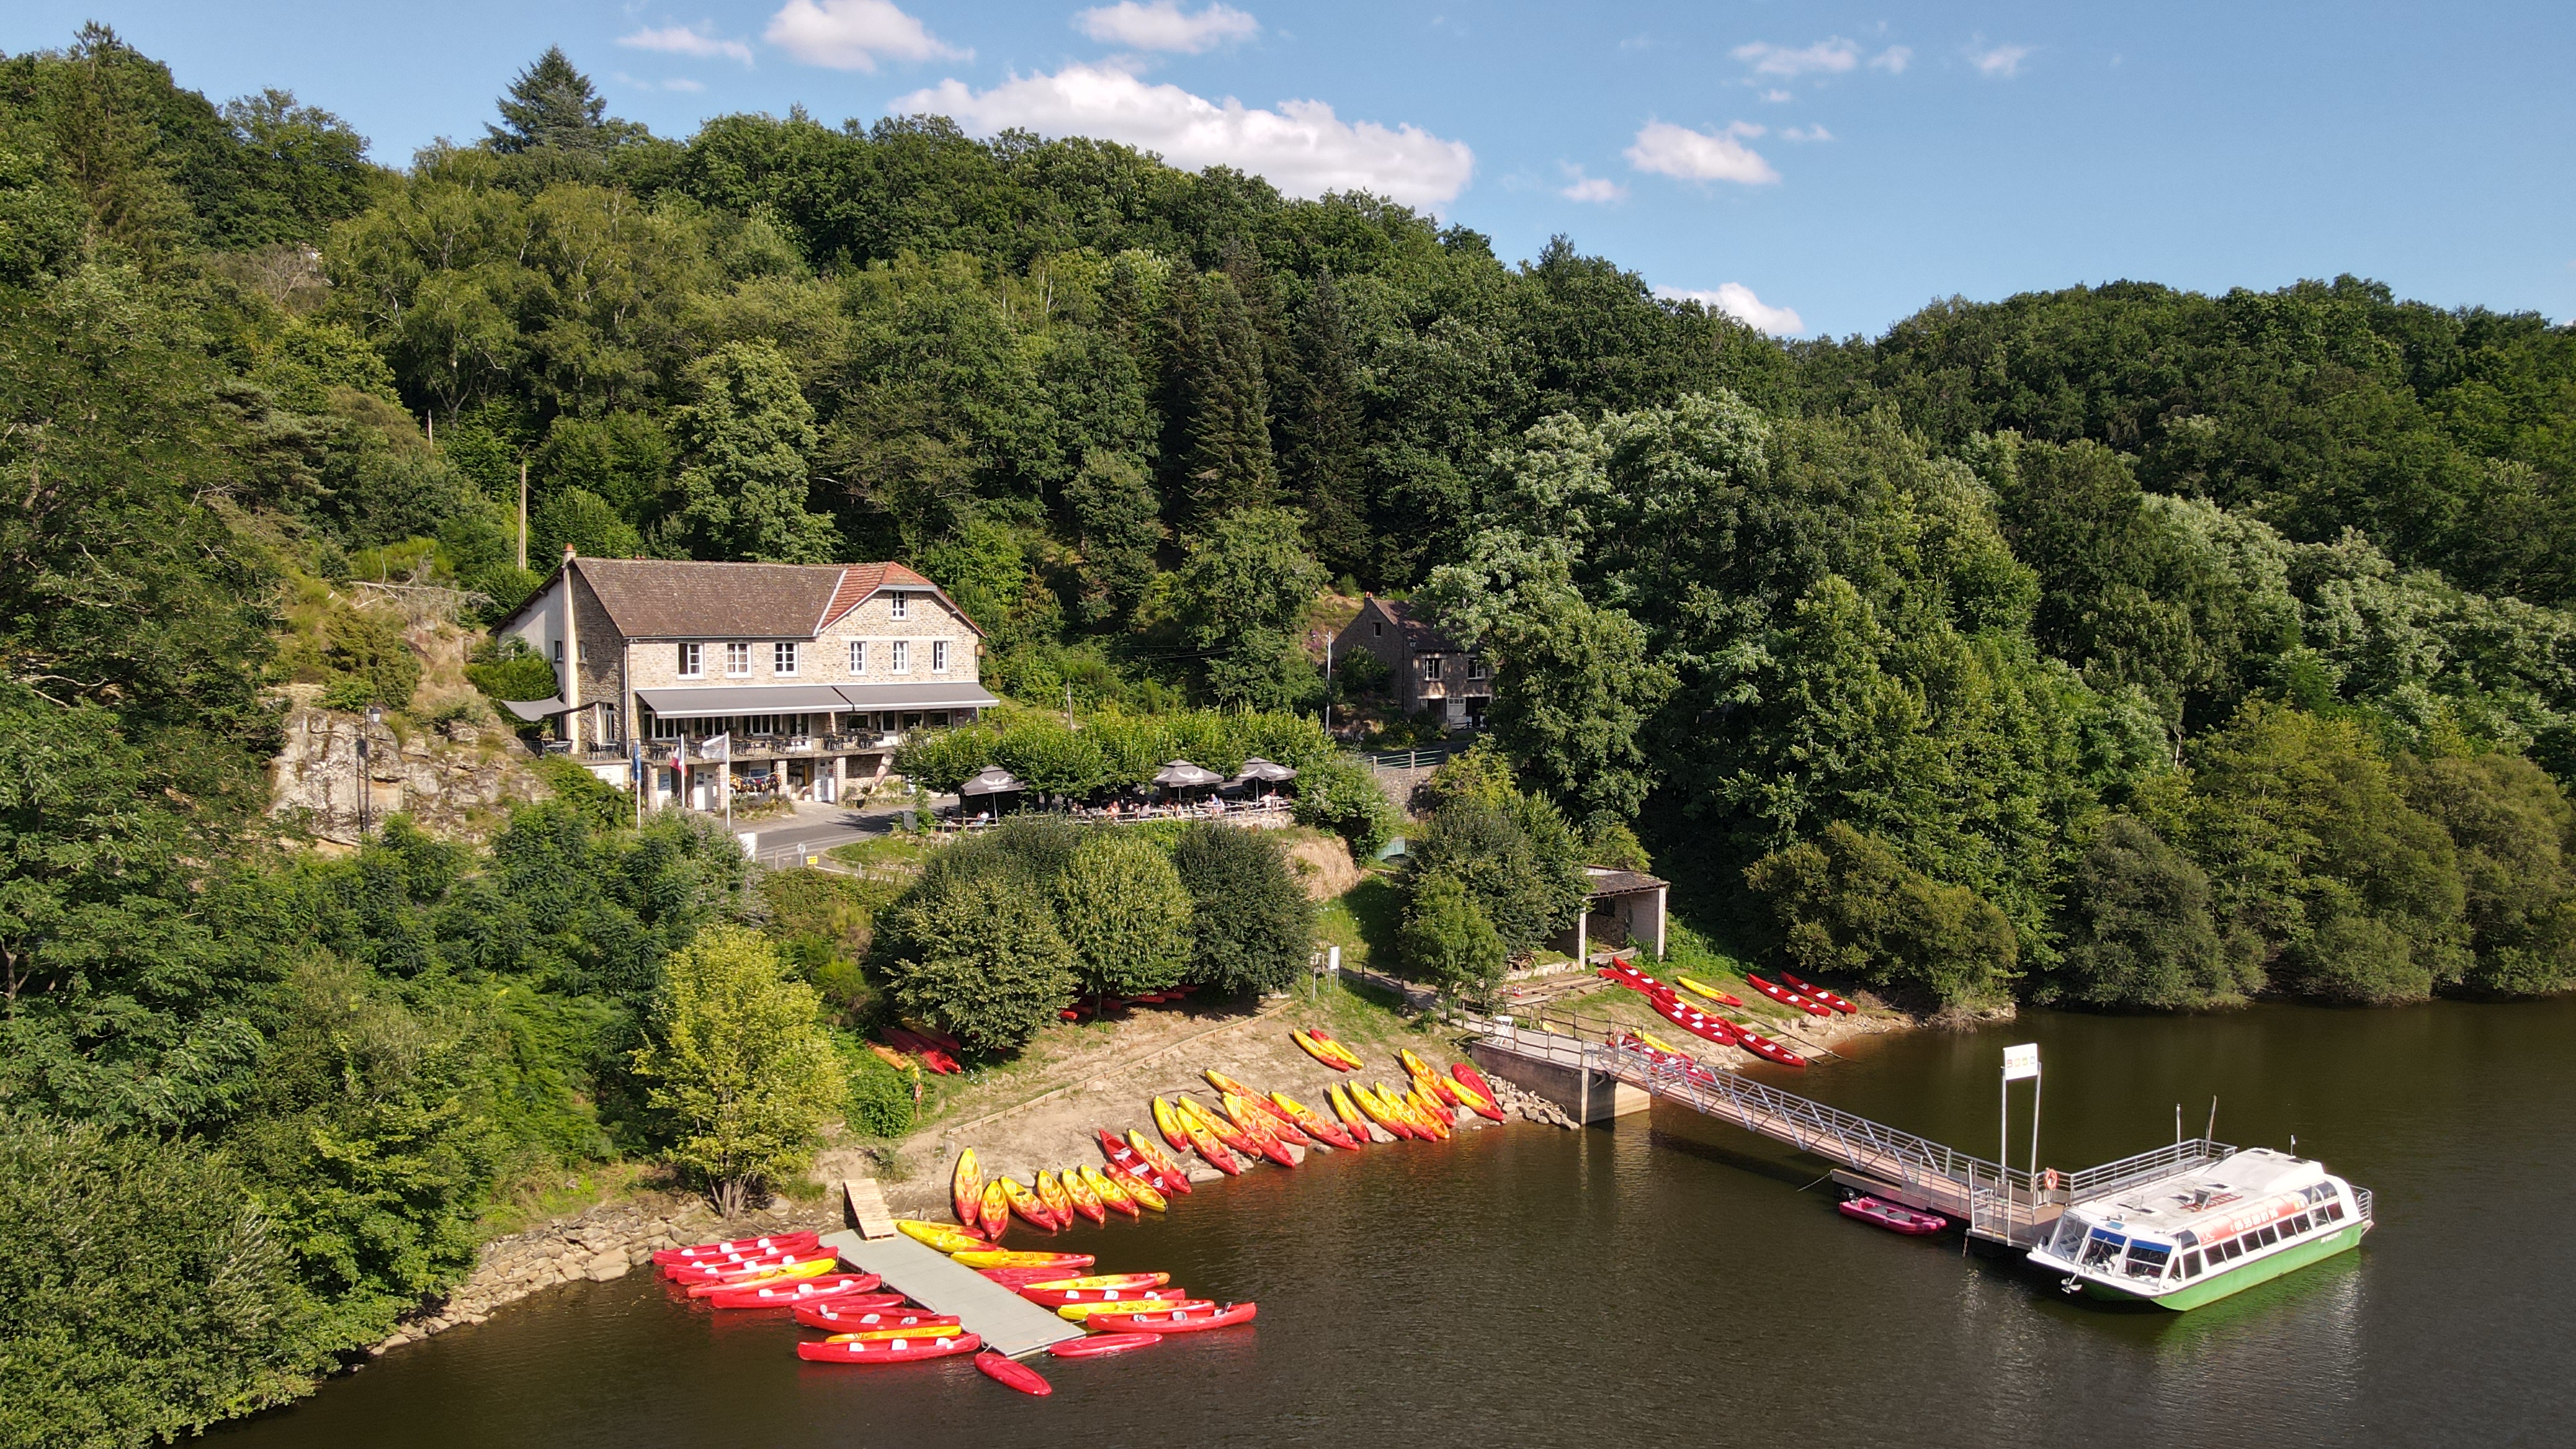 Location de canoës, kayaks et paddles à l'Hôtel Restaurant du Lac null France null null null null